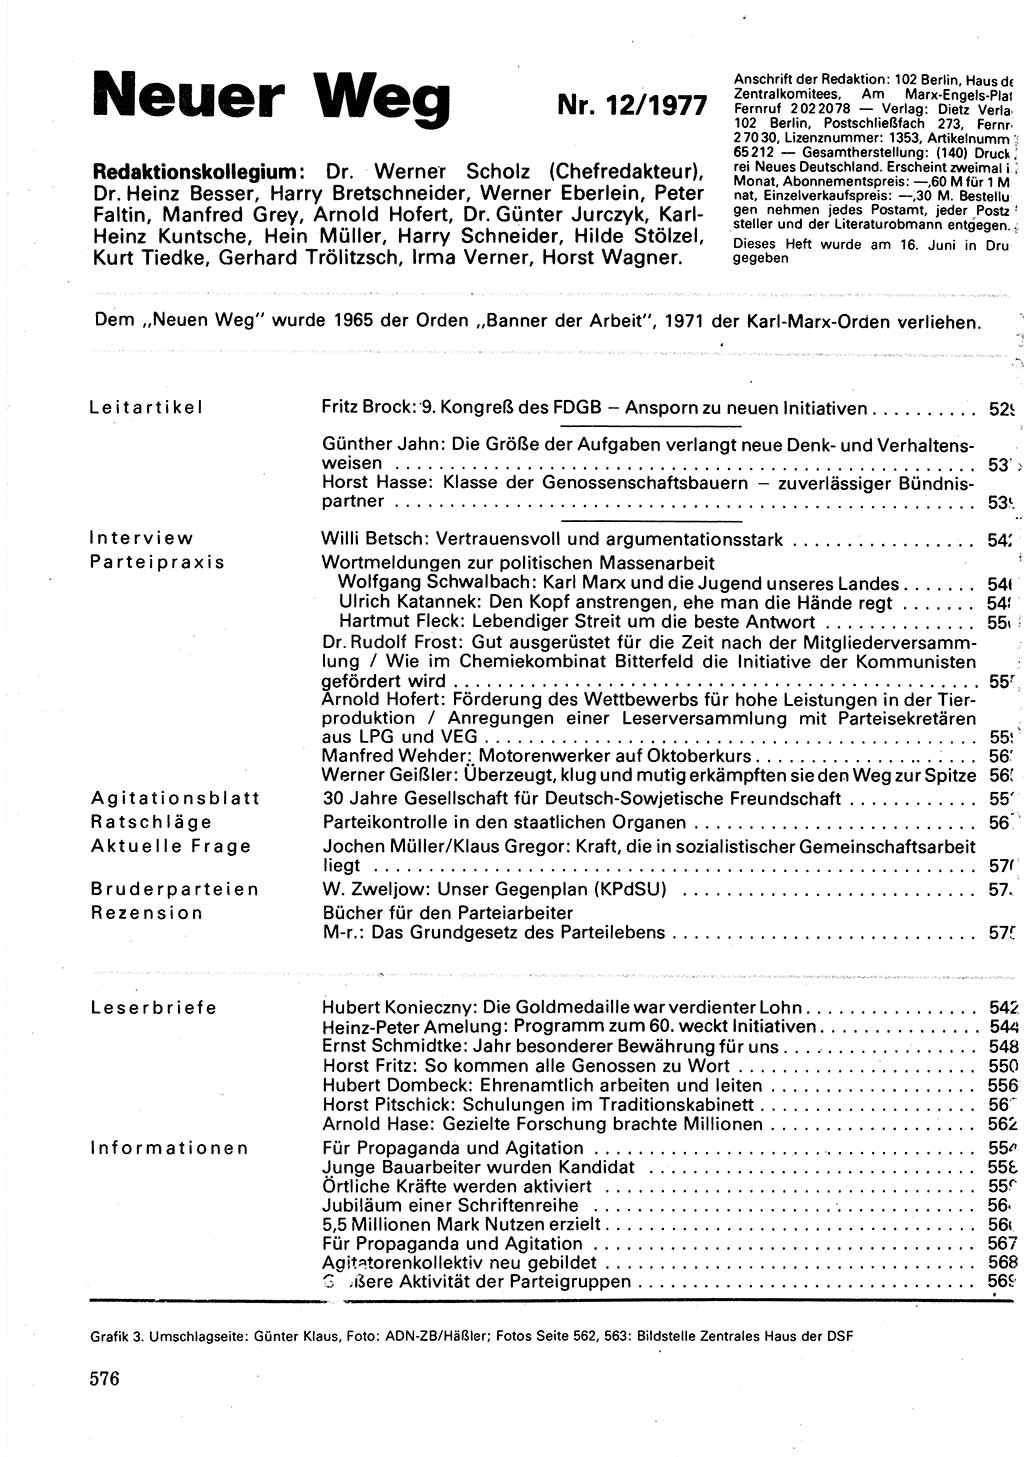 Neuer Weg (NW), Organ des Zentralkomitees (ZK) der SED (Sozialistische Einheitspartei Deutschlands) für Fragen des Parteilebens, 32. Jahrgang [Deutsche Demokratische Republik (DDR)] 1977, Seite 576 (NW ZK SED DDR 1977, S. 576)